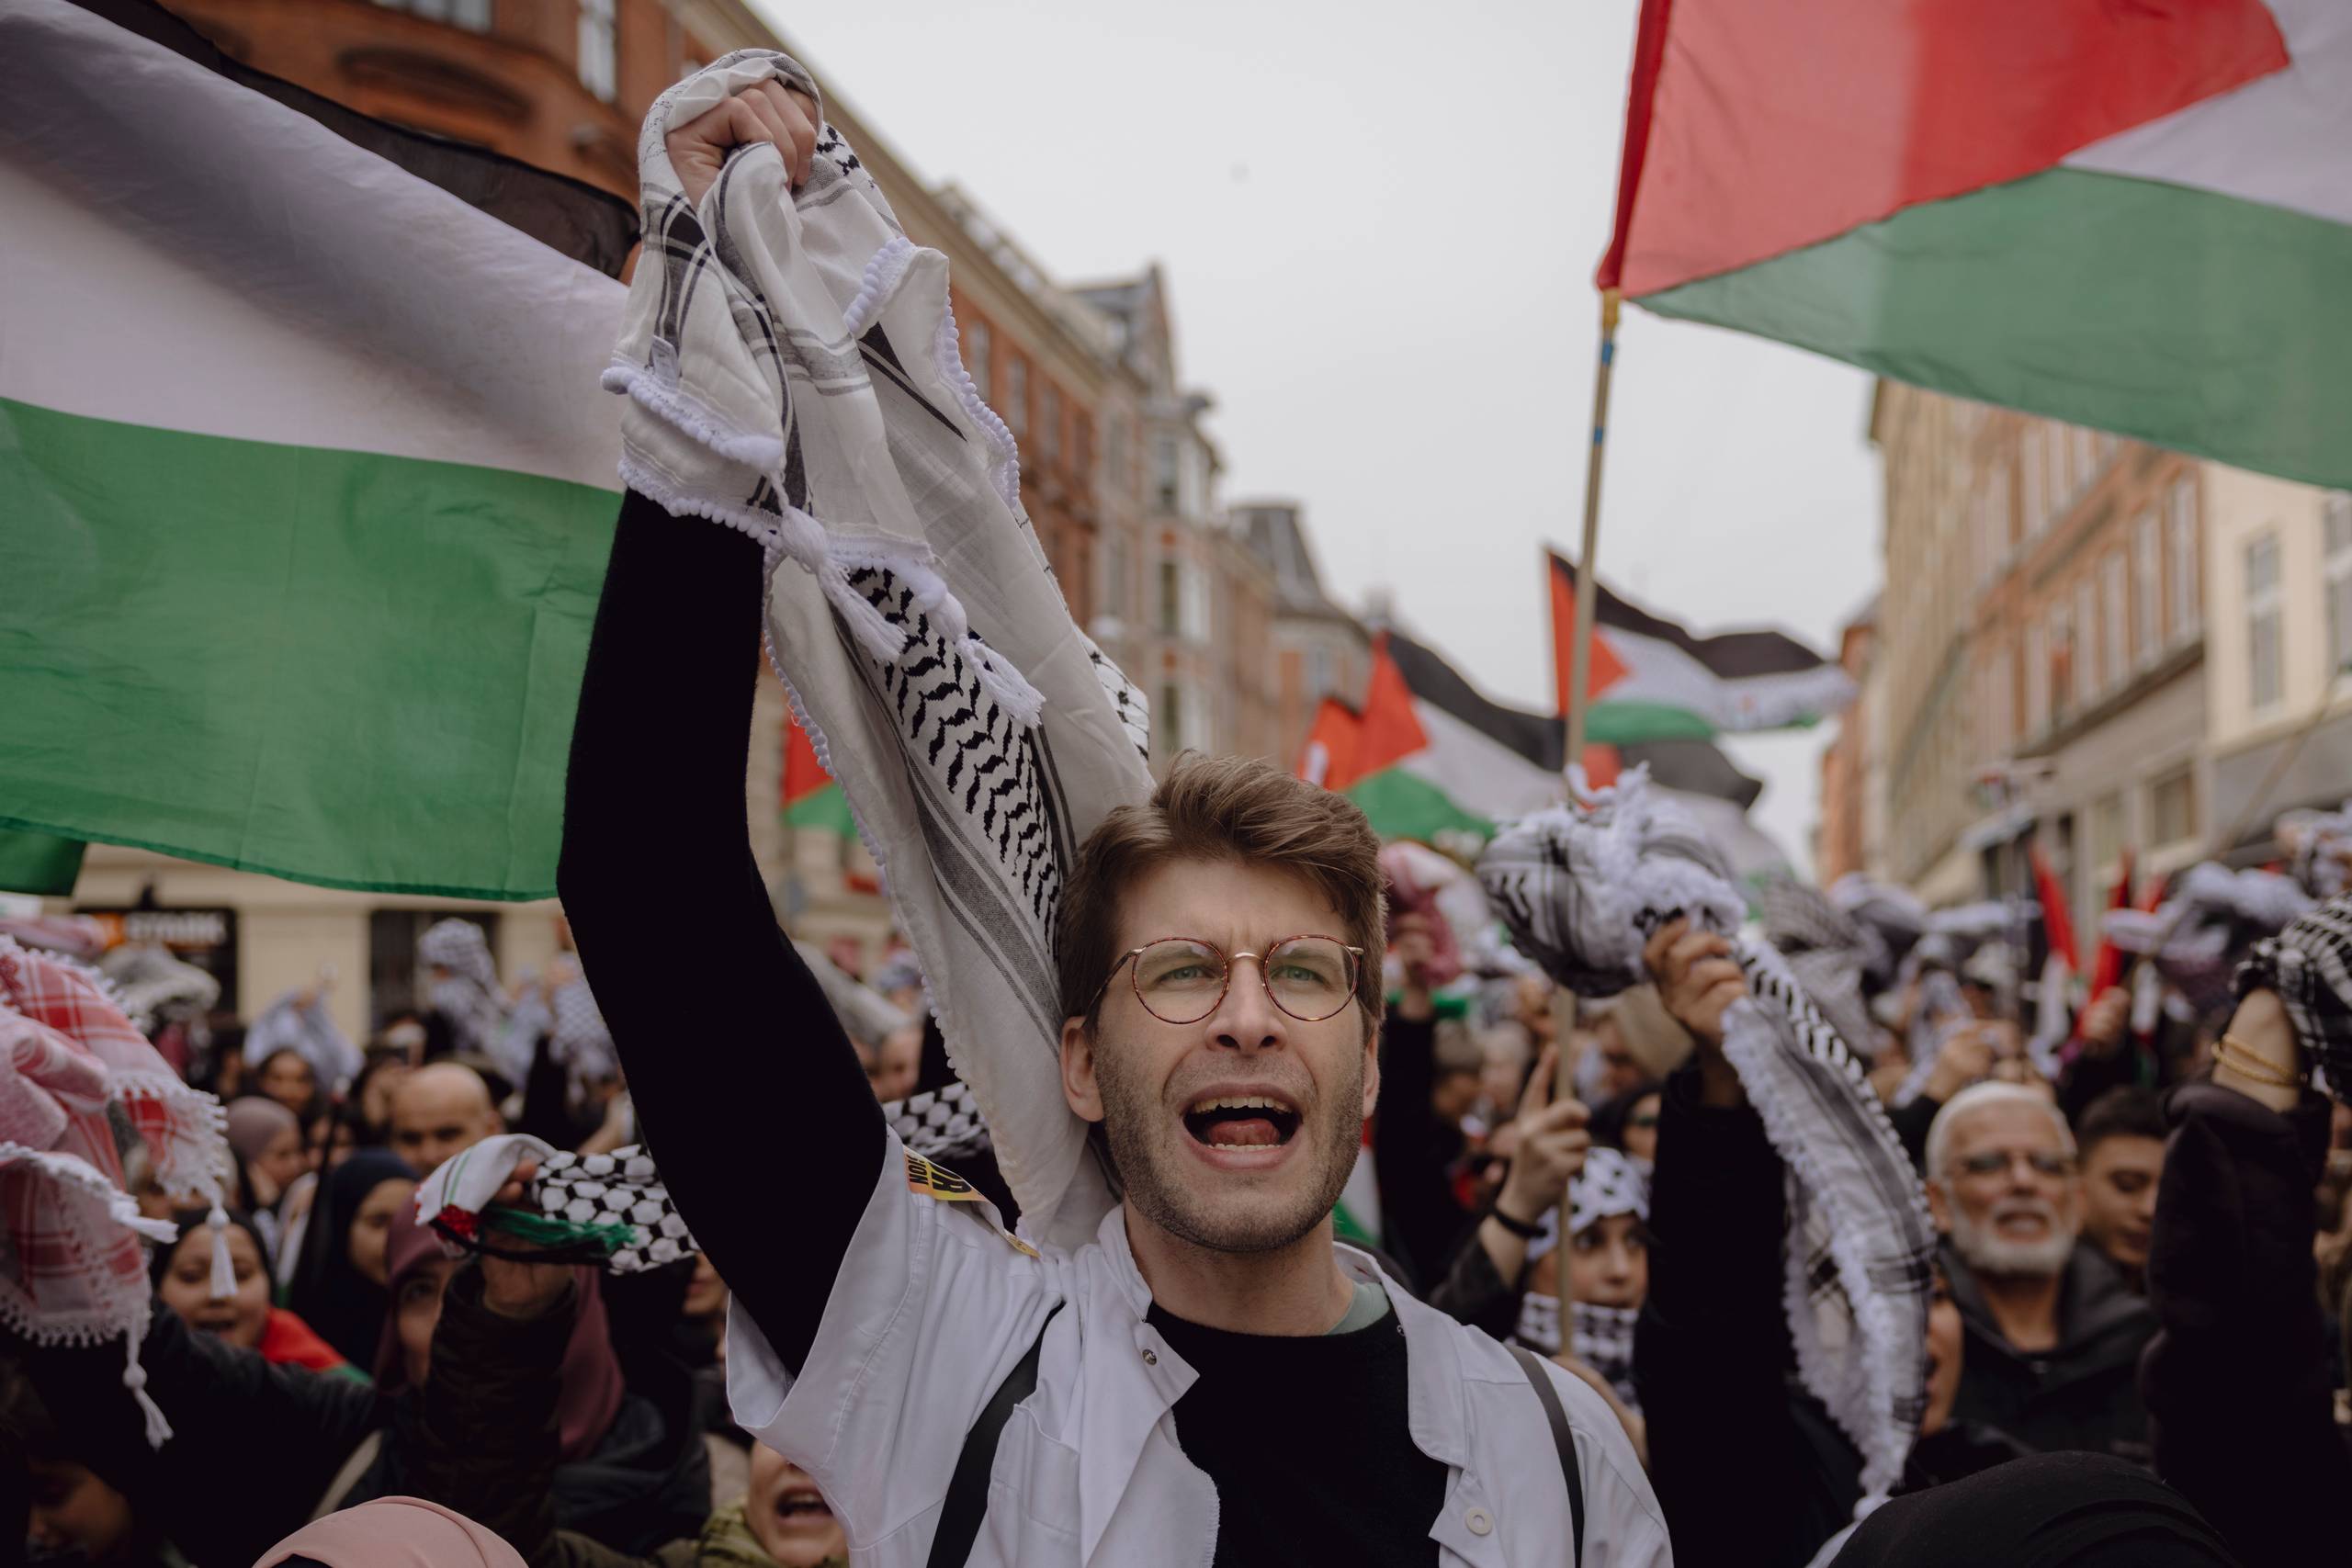 Søndag demonstrerer tusindvis for Palæstina i København - men er det egentlig i roden at tage danskernes befrielsesdag som gidsel i den sag, spørger Desiree OPhrbeck. Foto: Benjamin Krogh